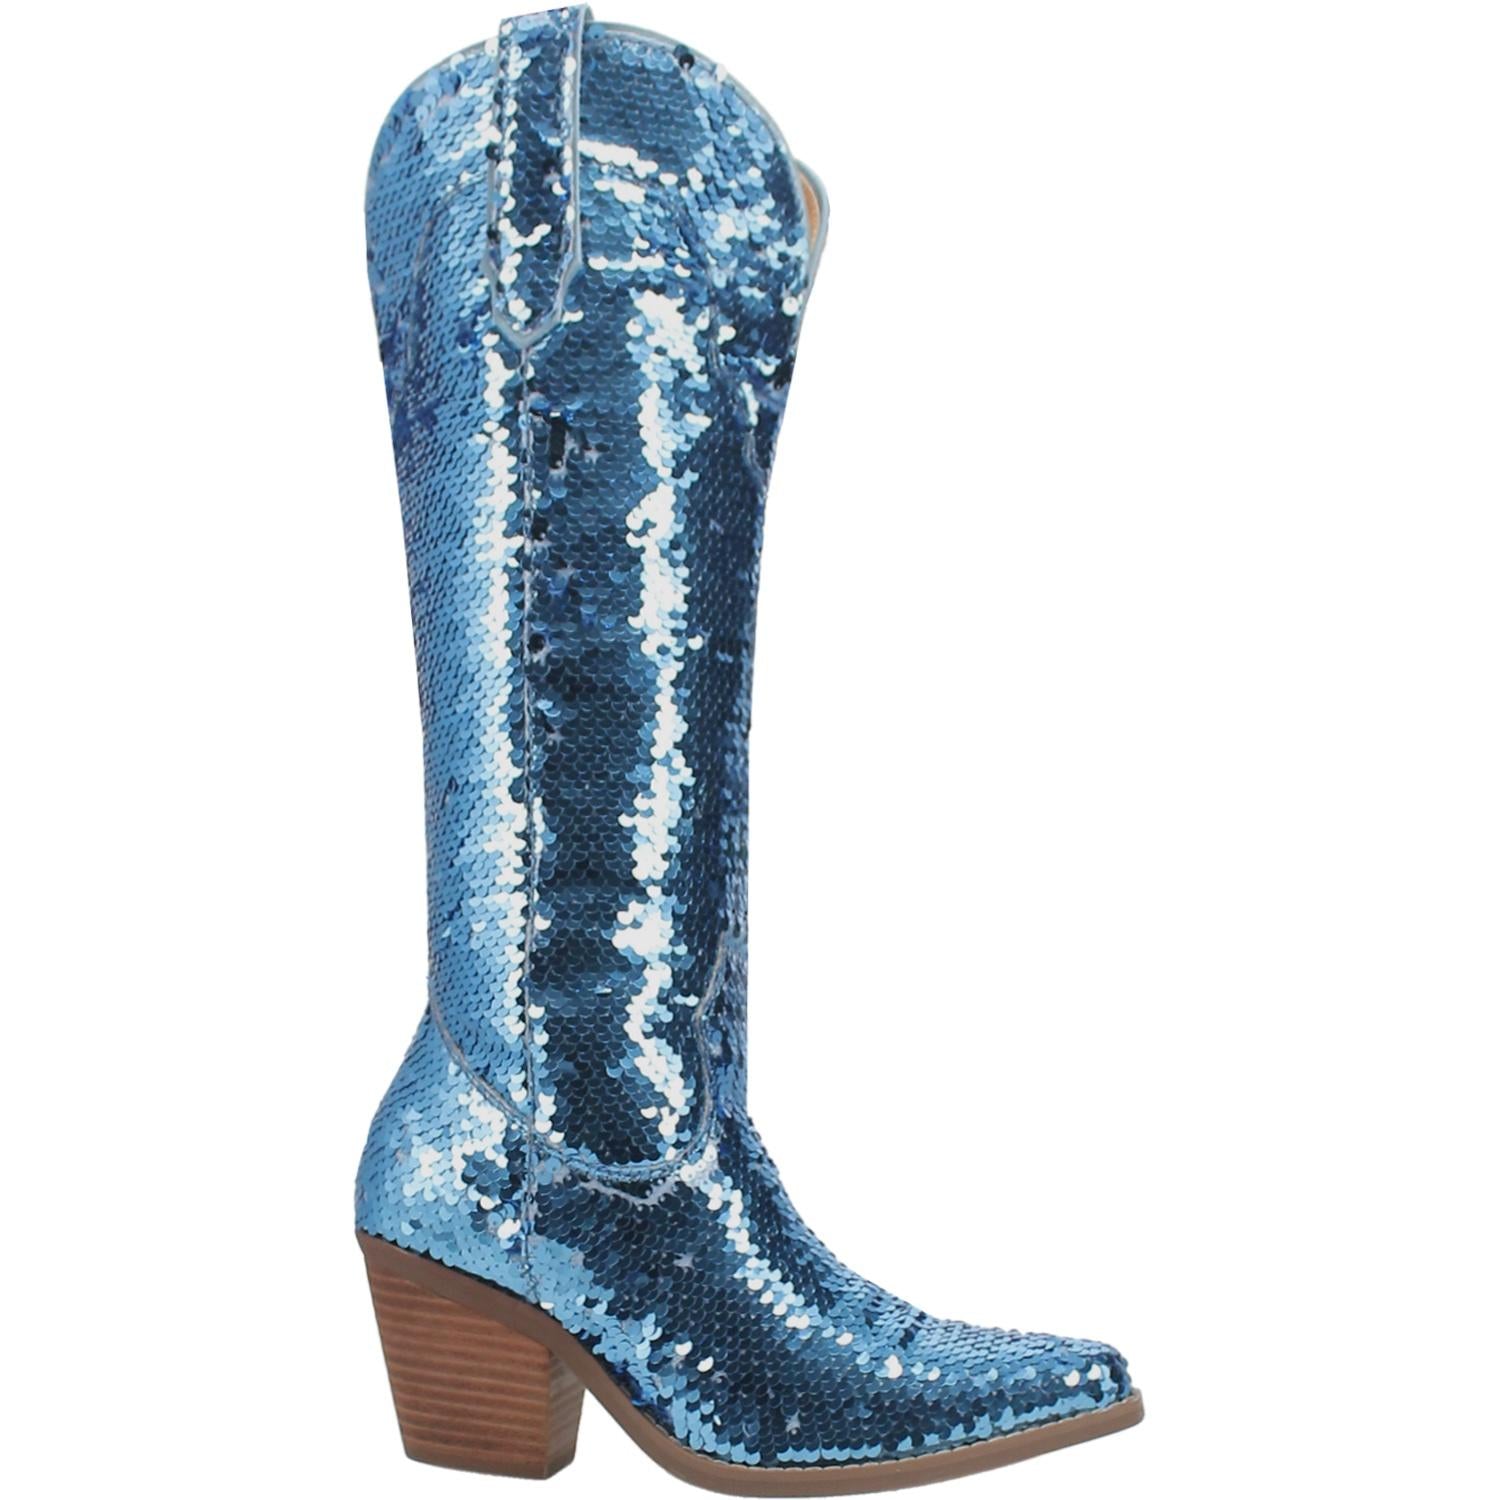 Dance Hall Queen Mermaid Ocean Blue Sequin Knee High Boots (DS)